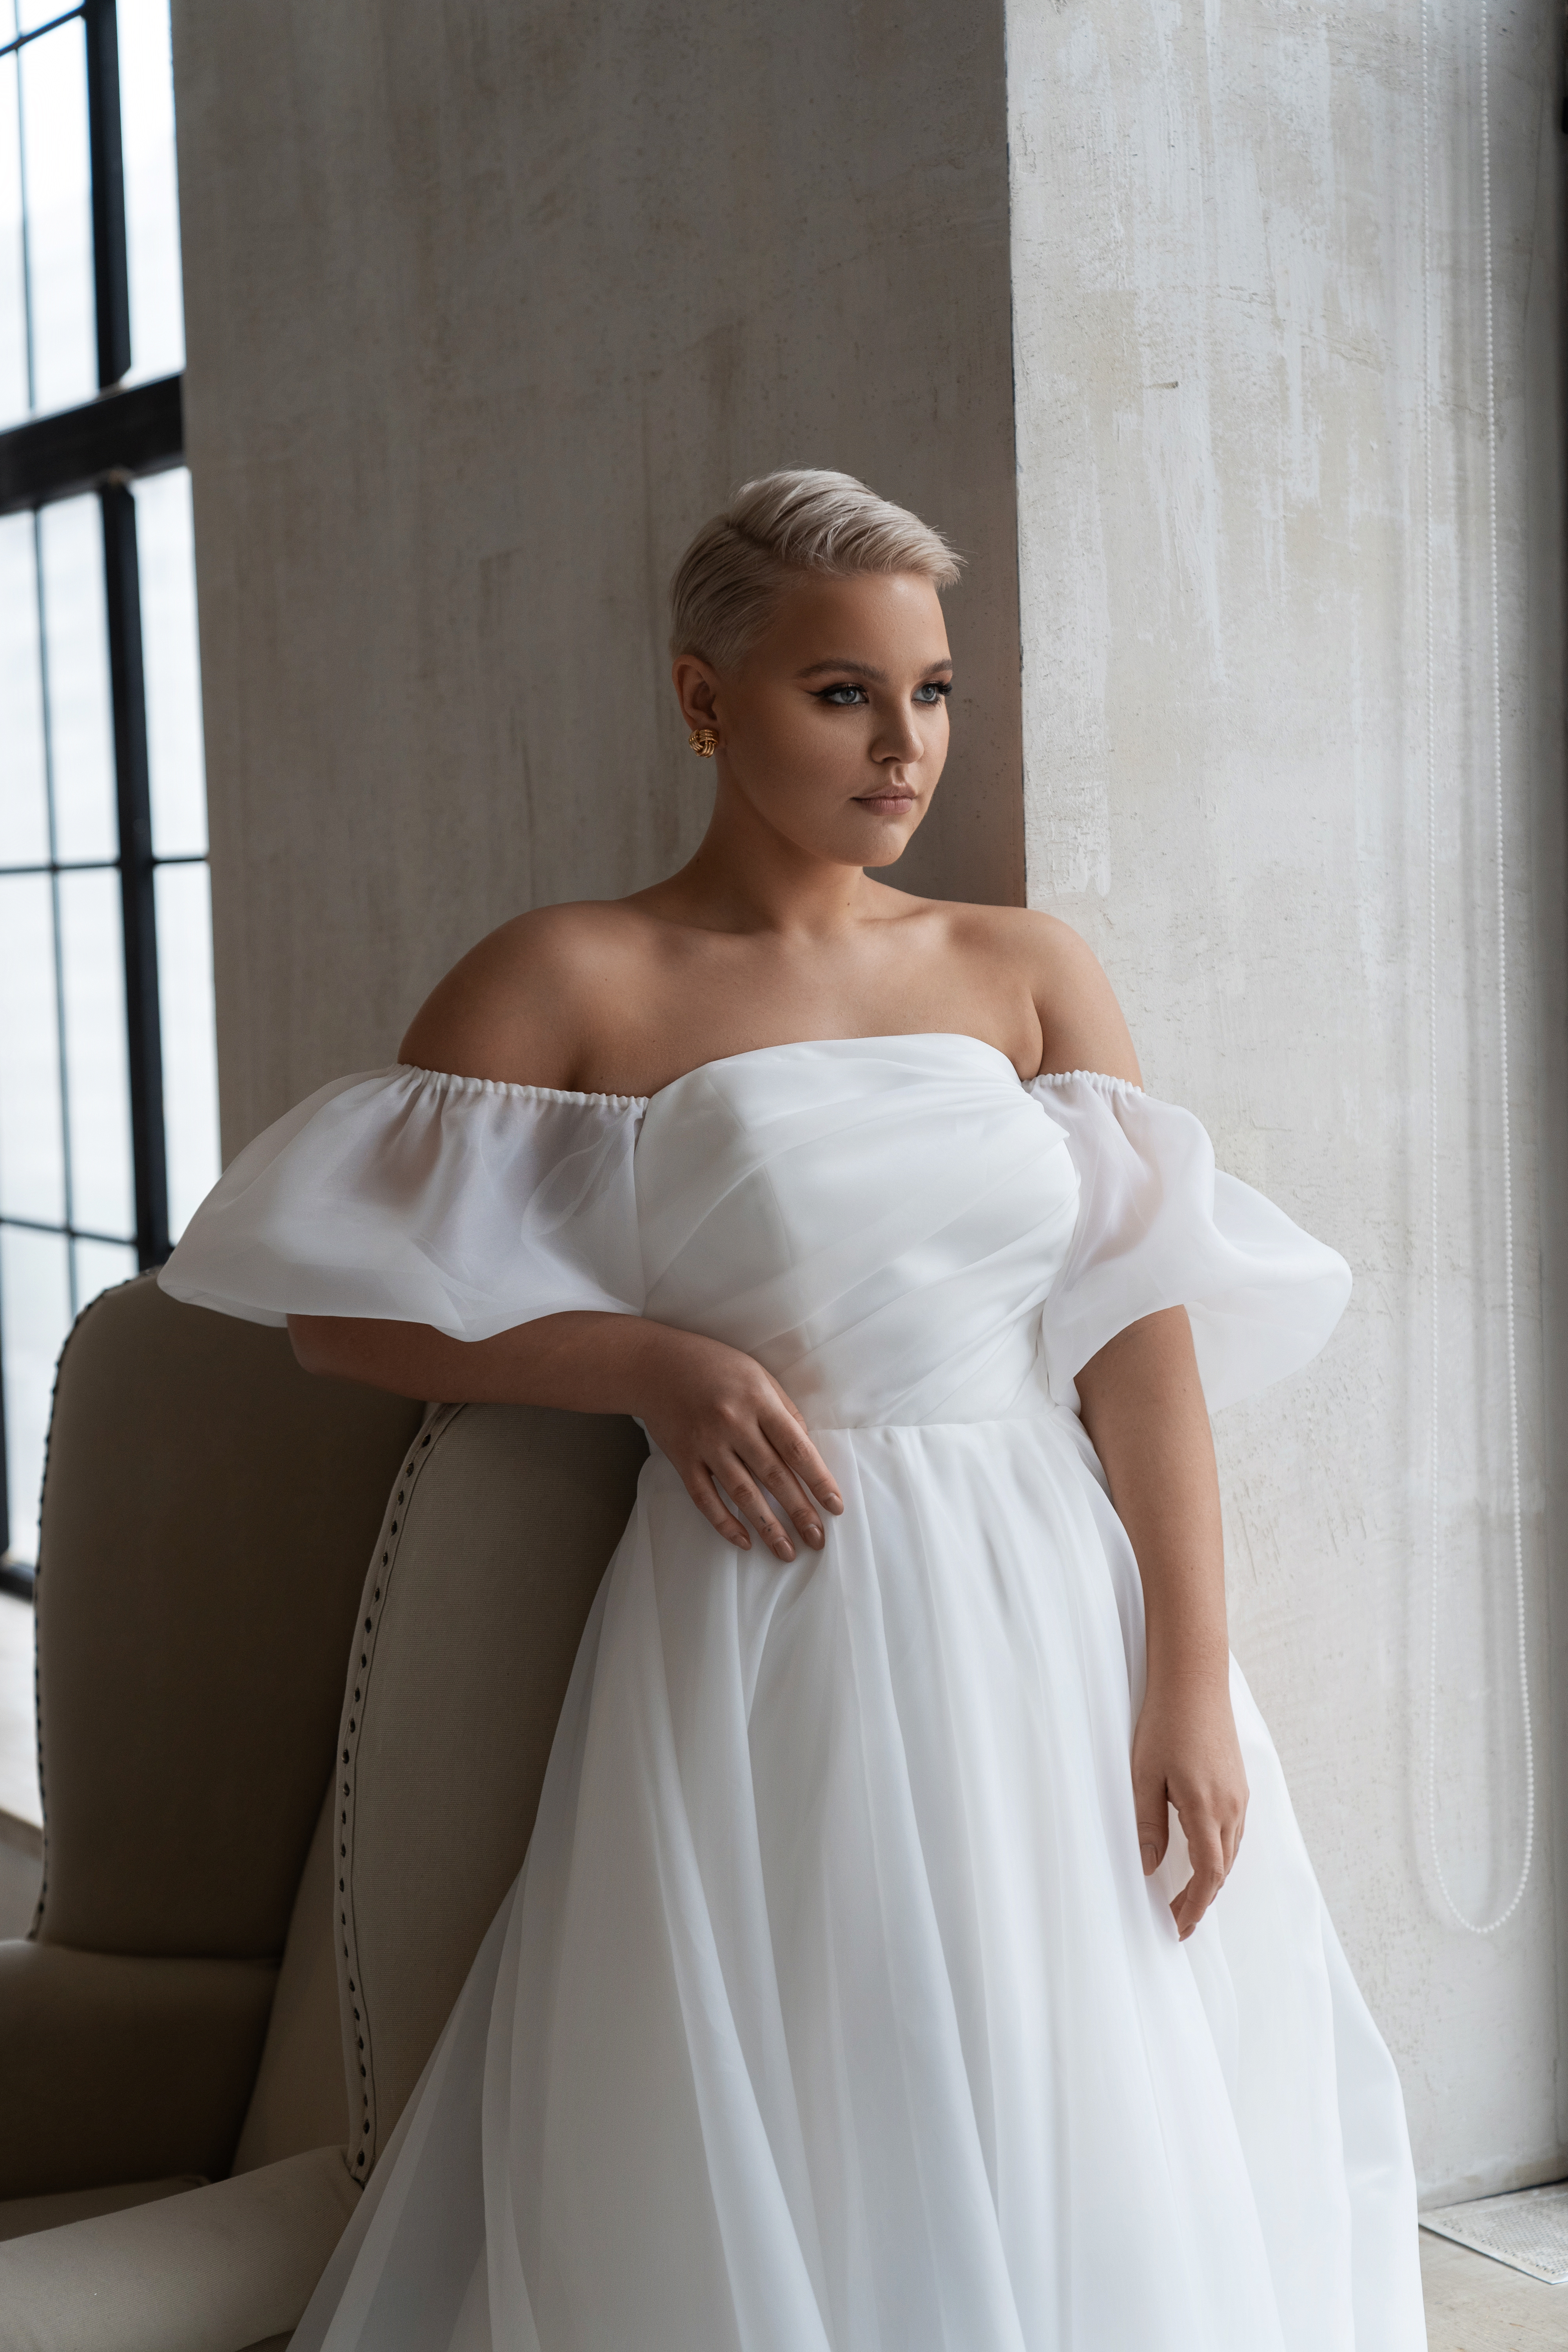 Свадебное платье «Орита плюс сайз» Марта — купить в Ростове платье Орита из коллекции 2021 года